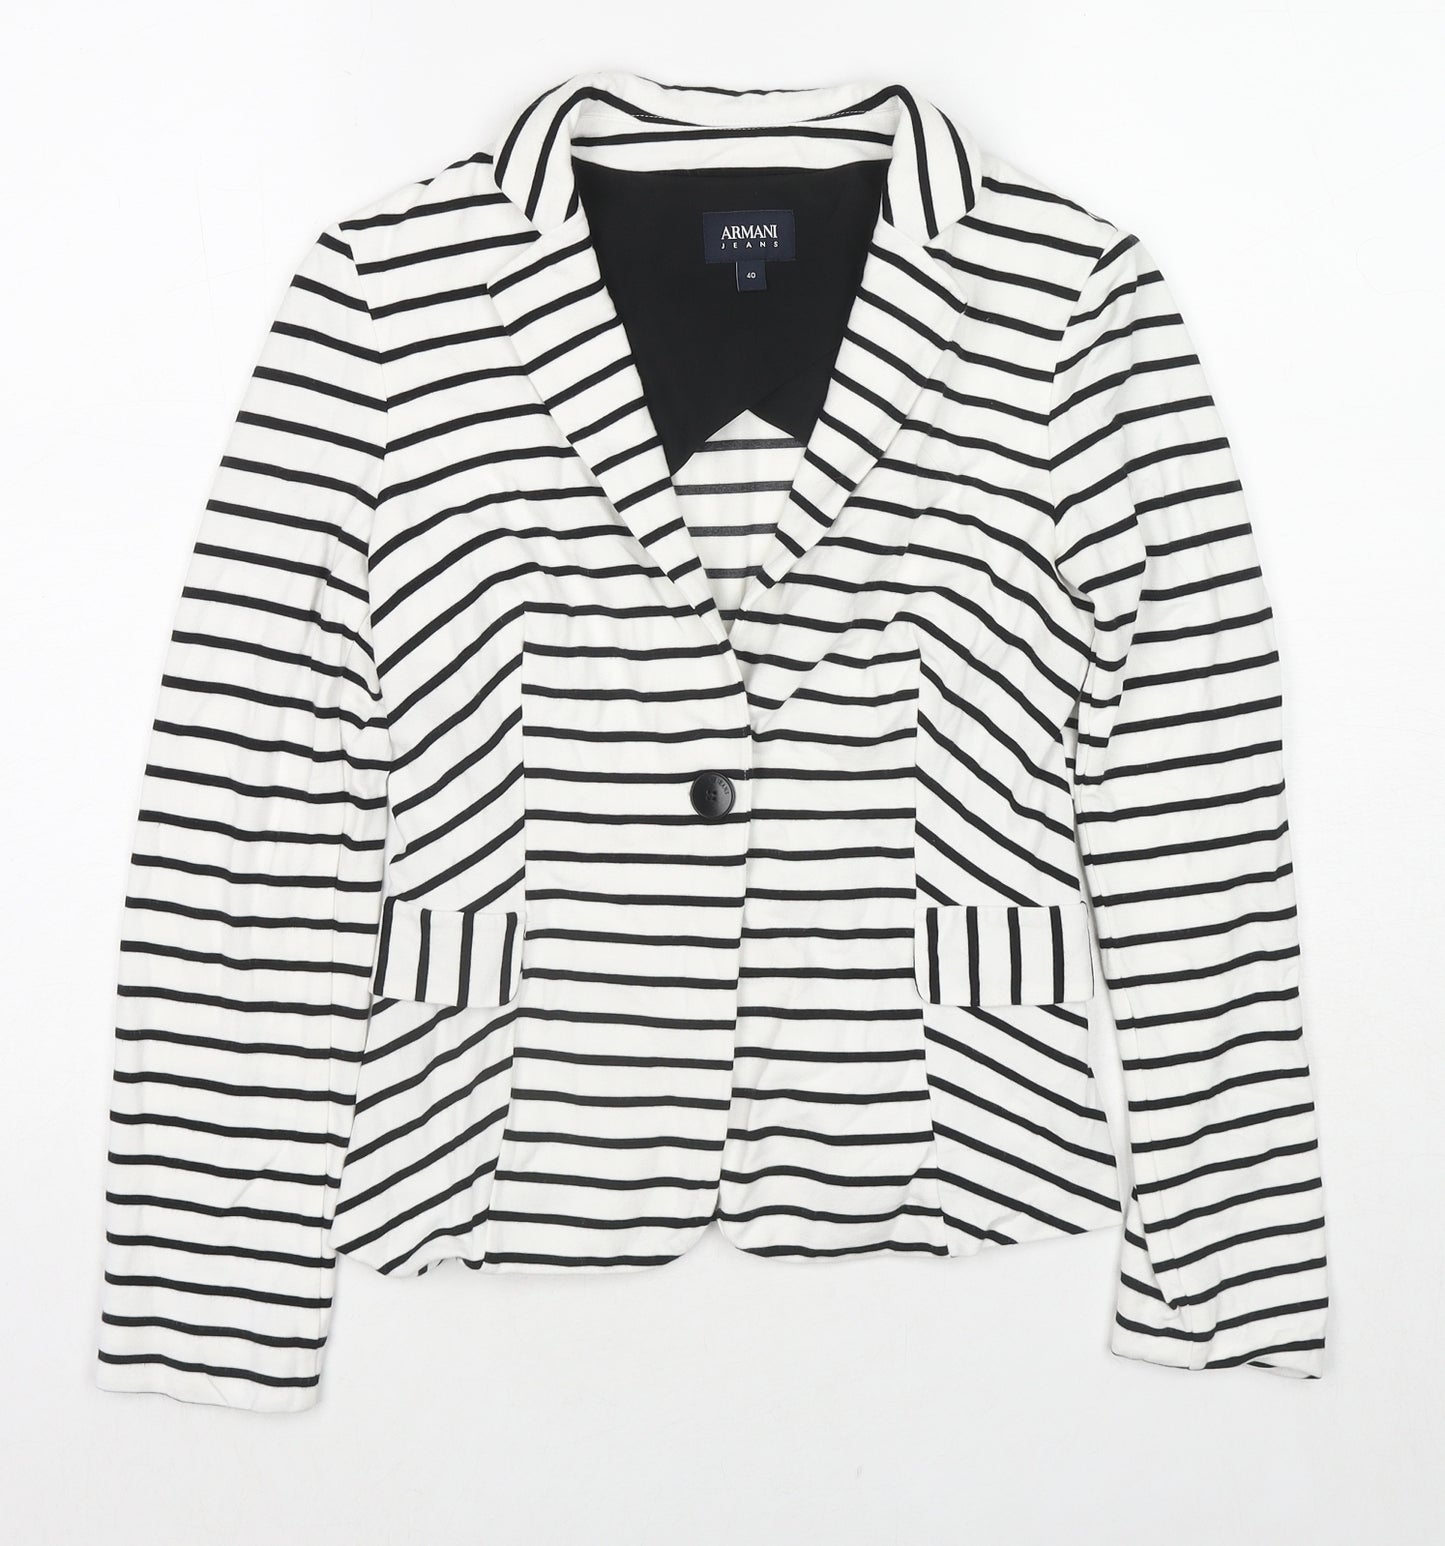 Armani Jeans Womens White Striped Jacket Blazer Size 12 Button